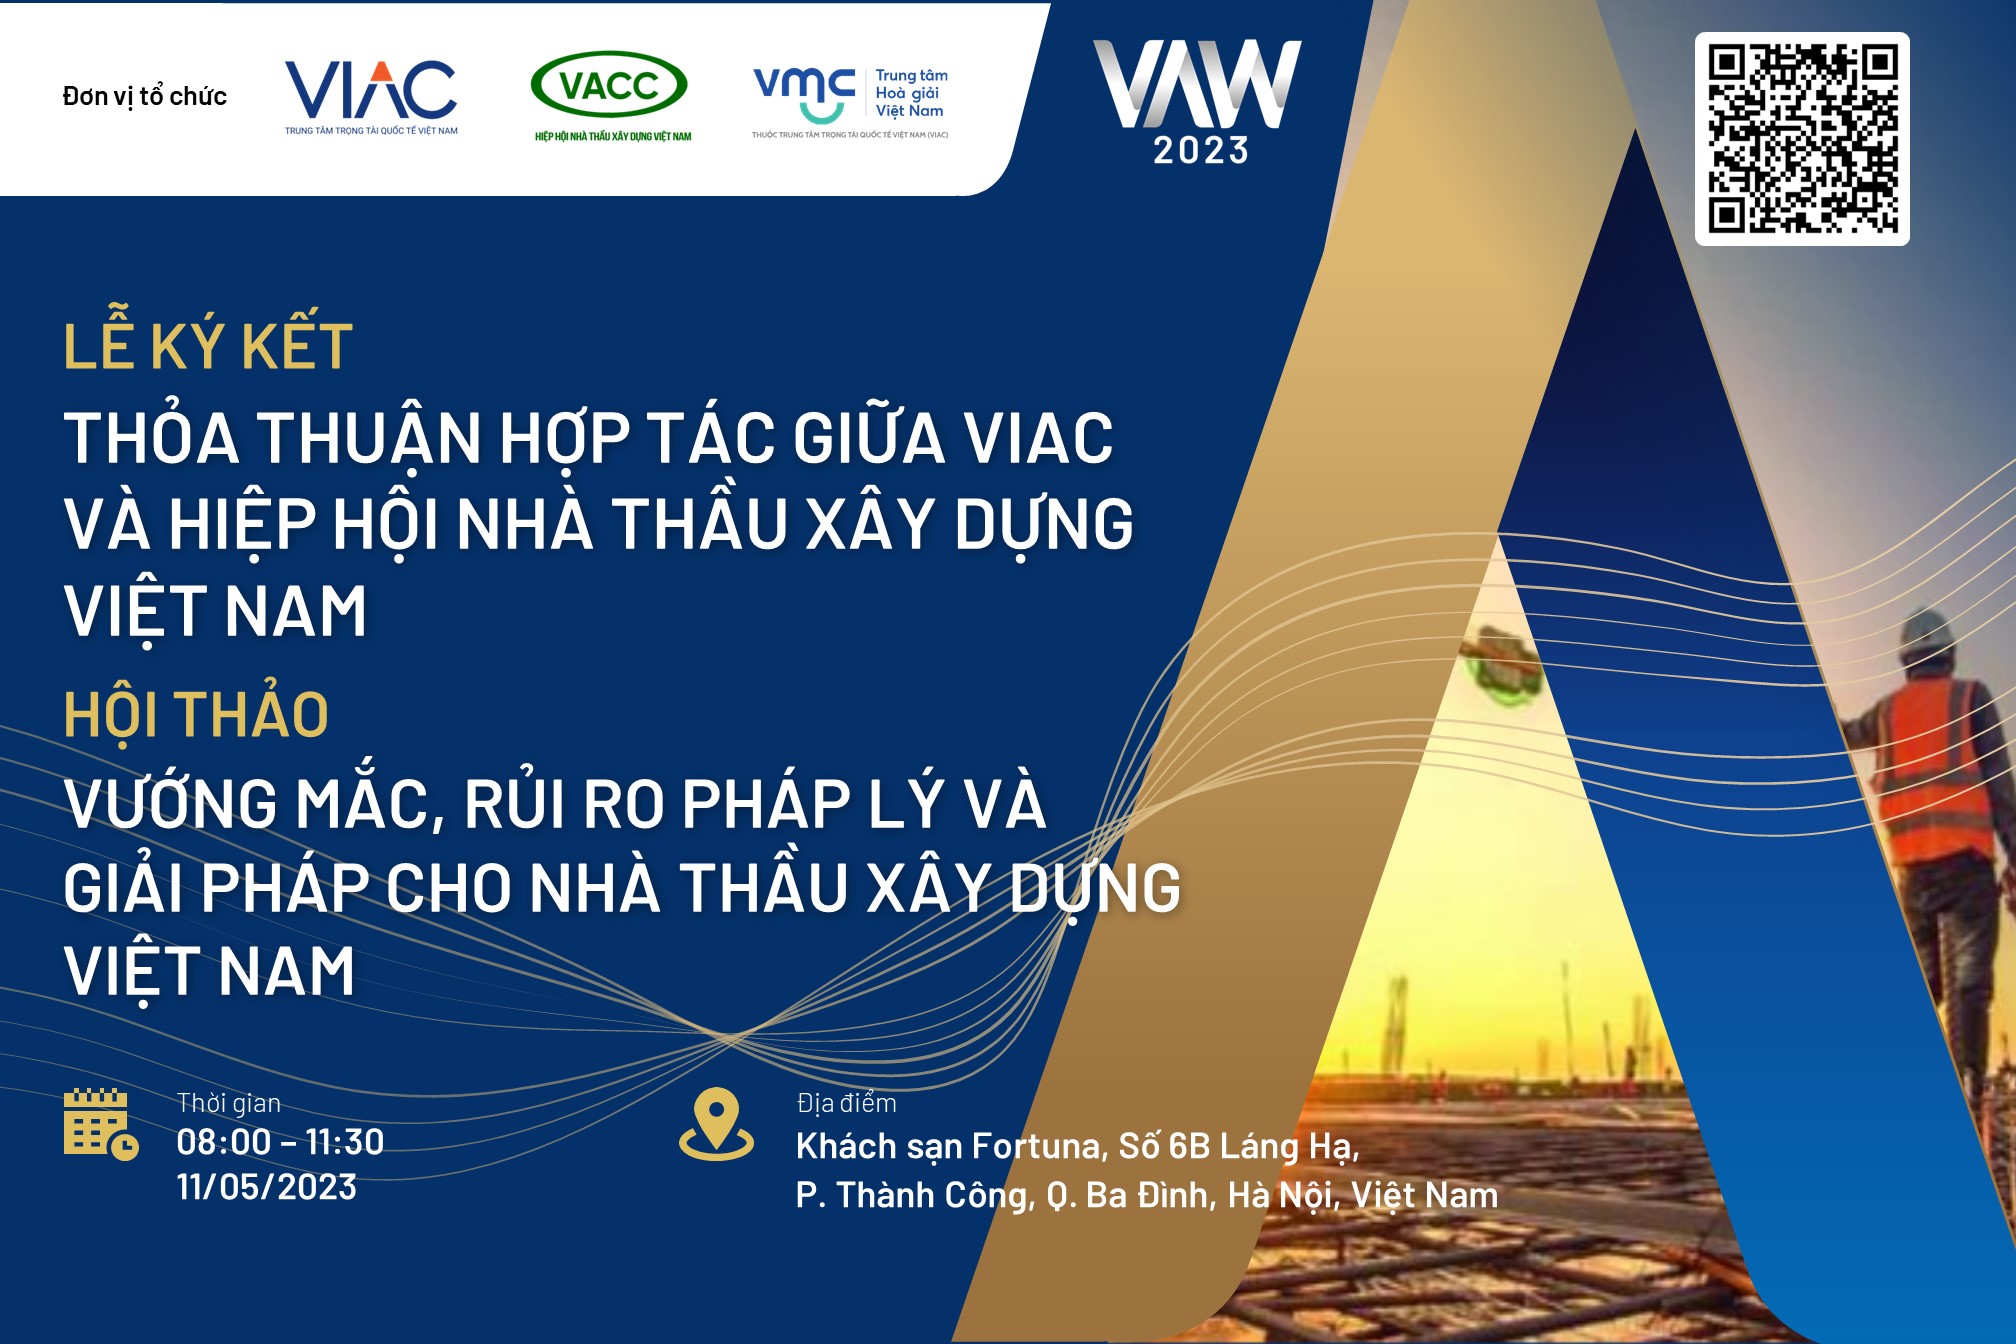 [VAW 2023] Lễ Ký kết thỏa thuận hợp tác và Hội thảo Vướng mắc, rủi ro pháp lý và giải pháp cho nhà thầu xây dựng Việt Nam 